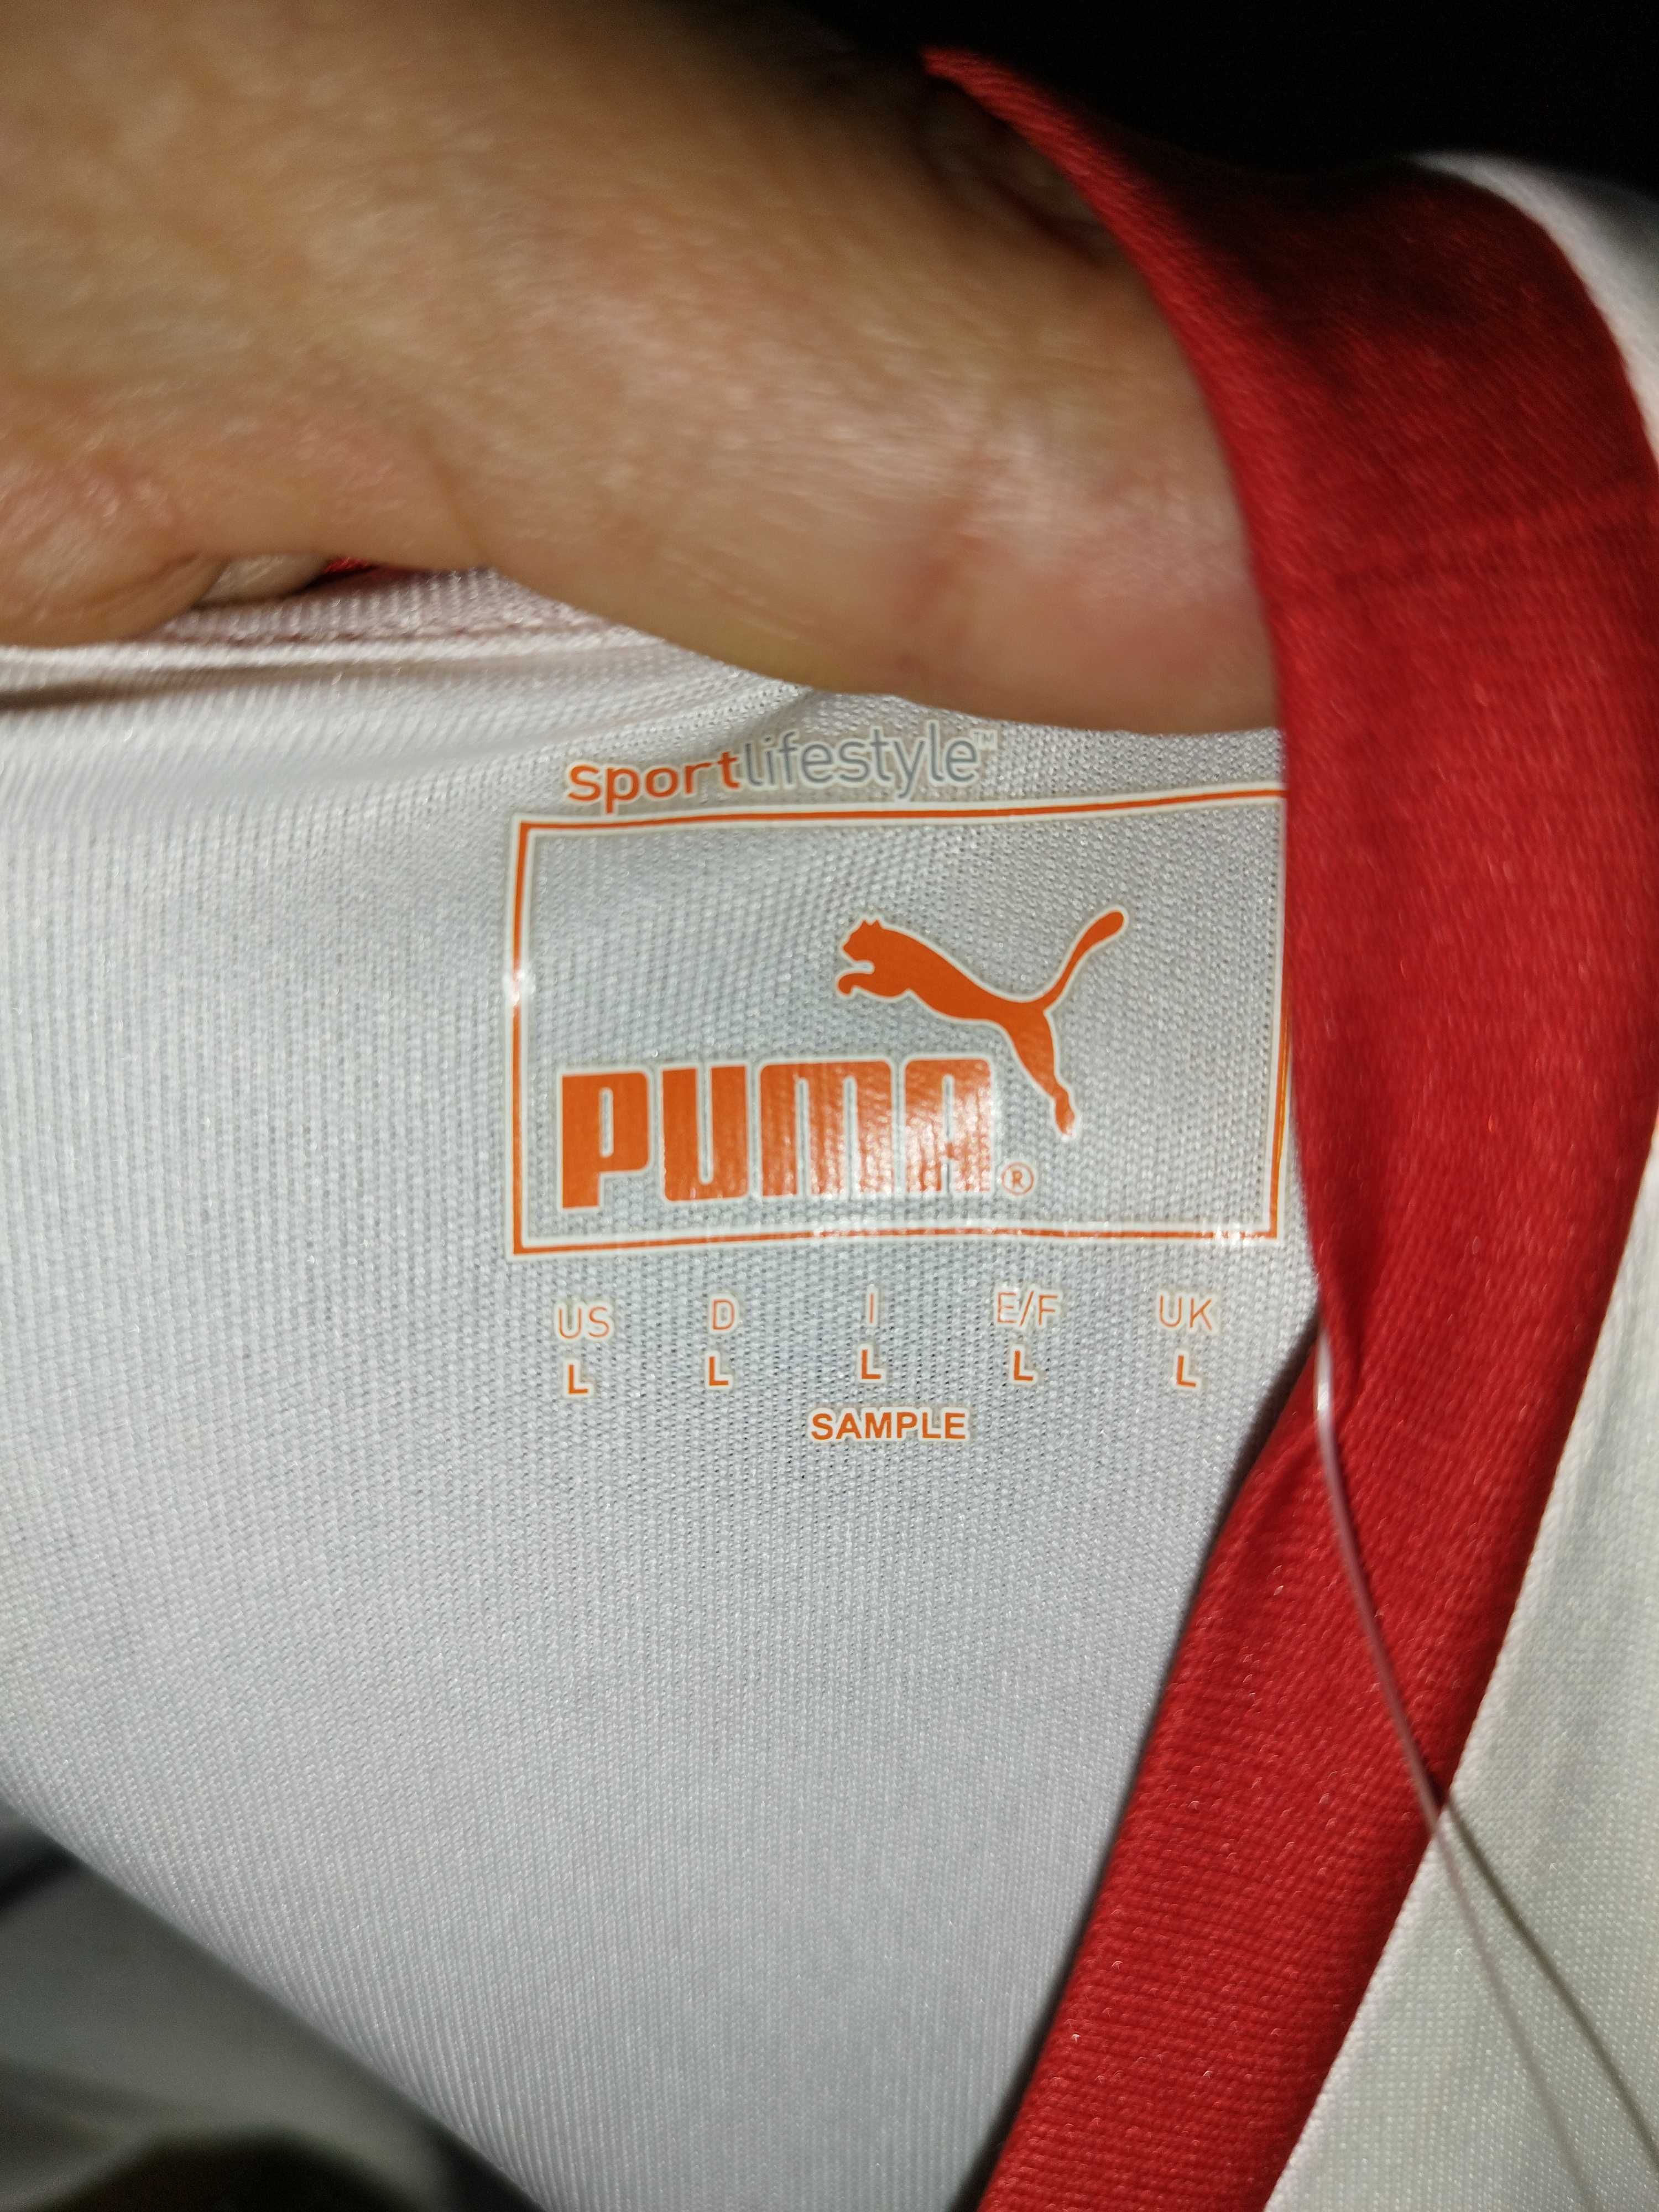 tricou vfb stuttgart puma sample marimea L nou cu eticheta